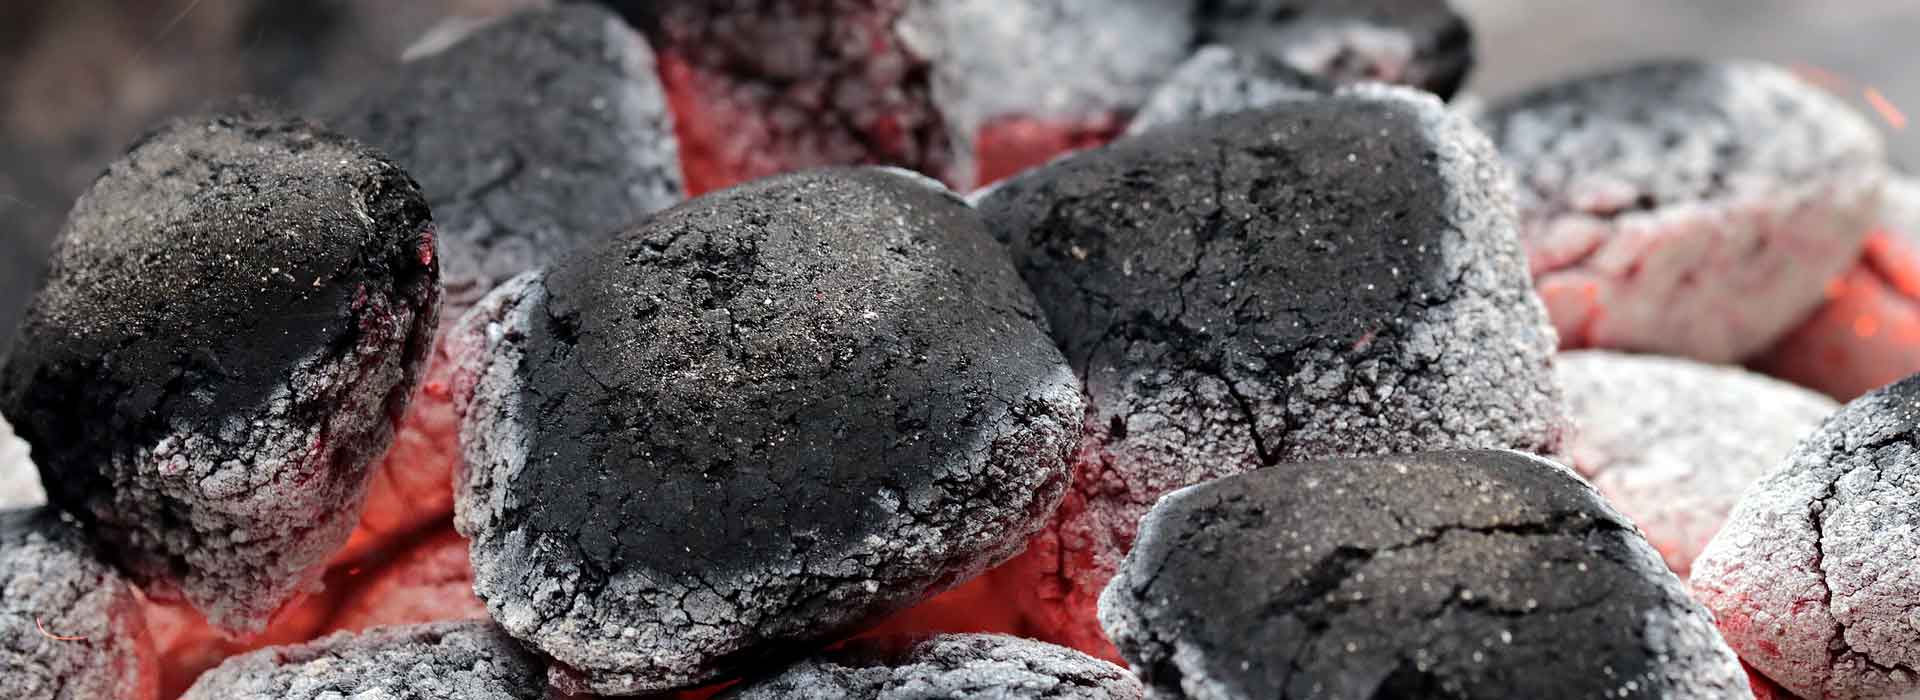 Rakovina plic může vznikat i spalováním uhlí